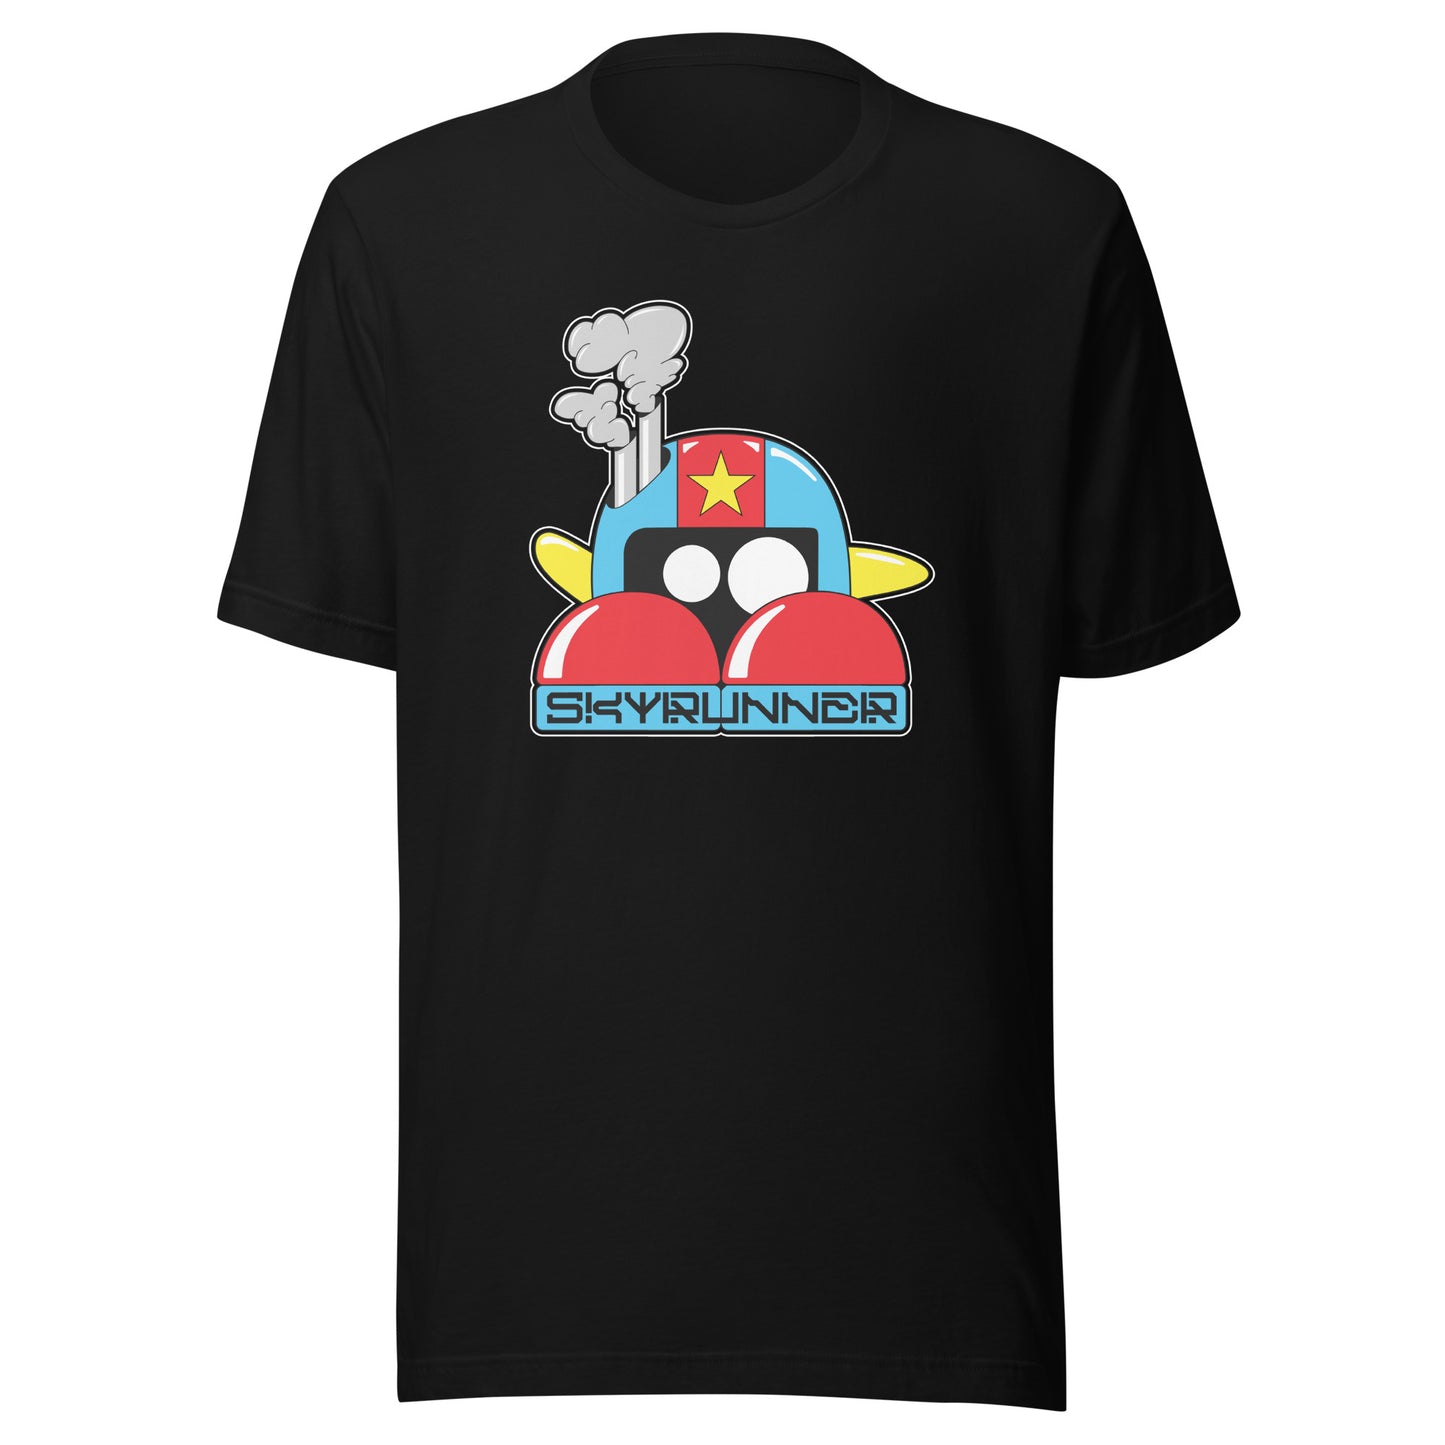 Skyrunner - T-Shirt